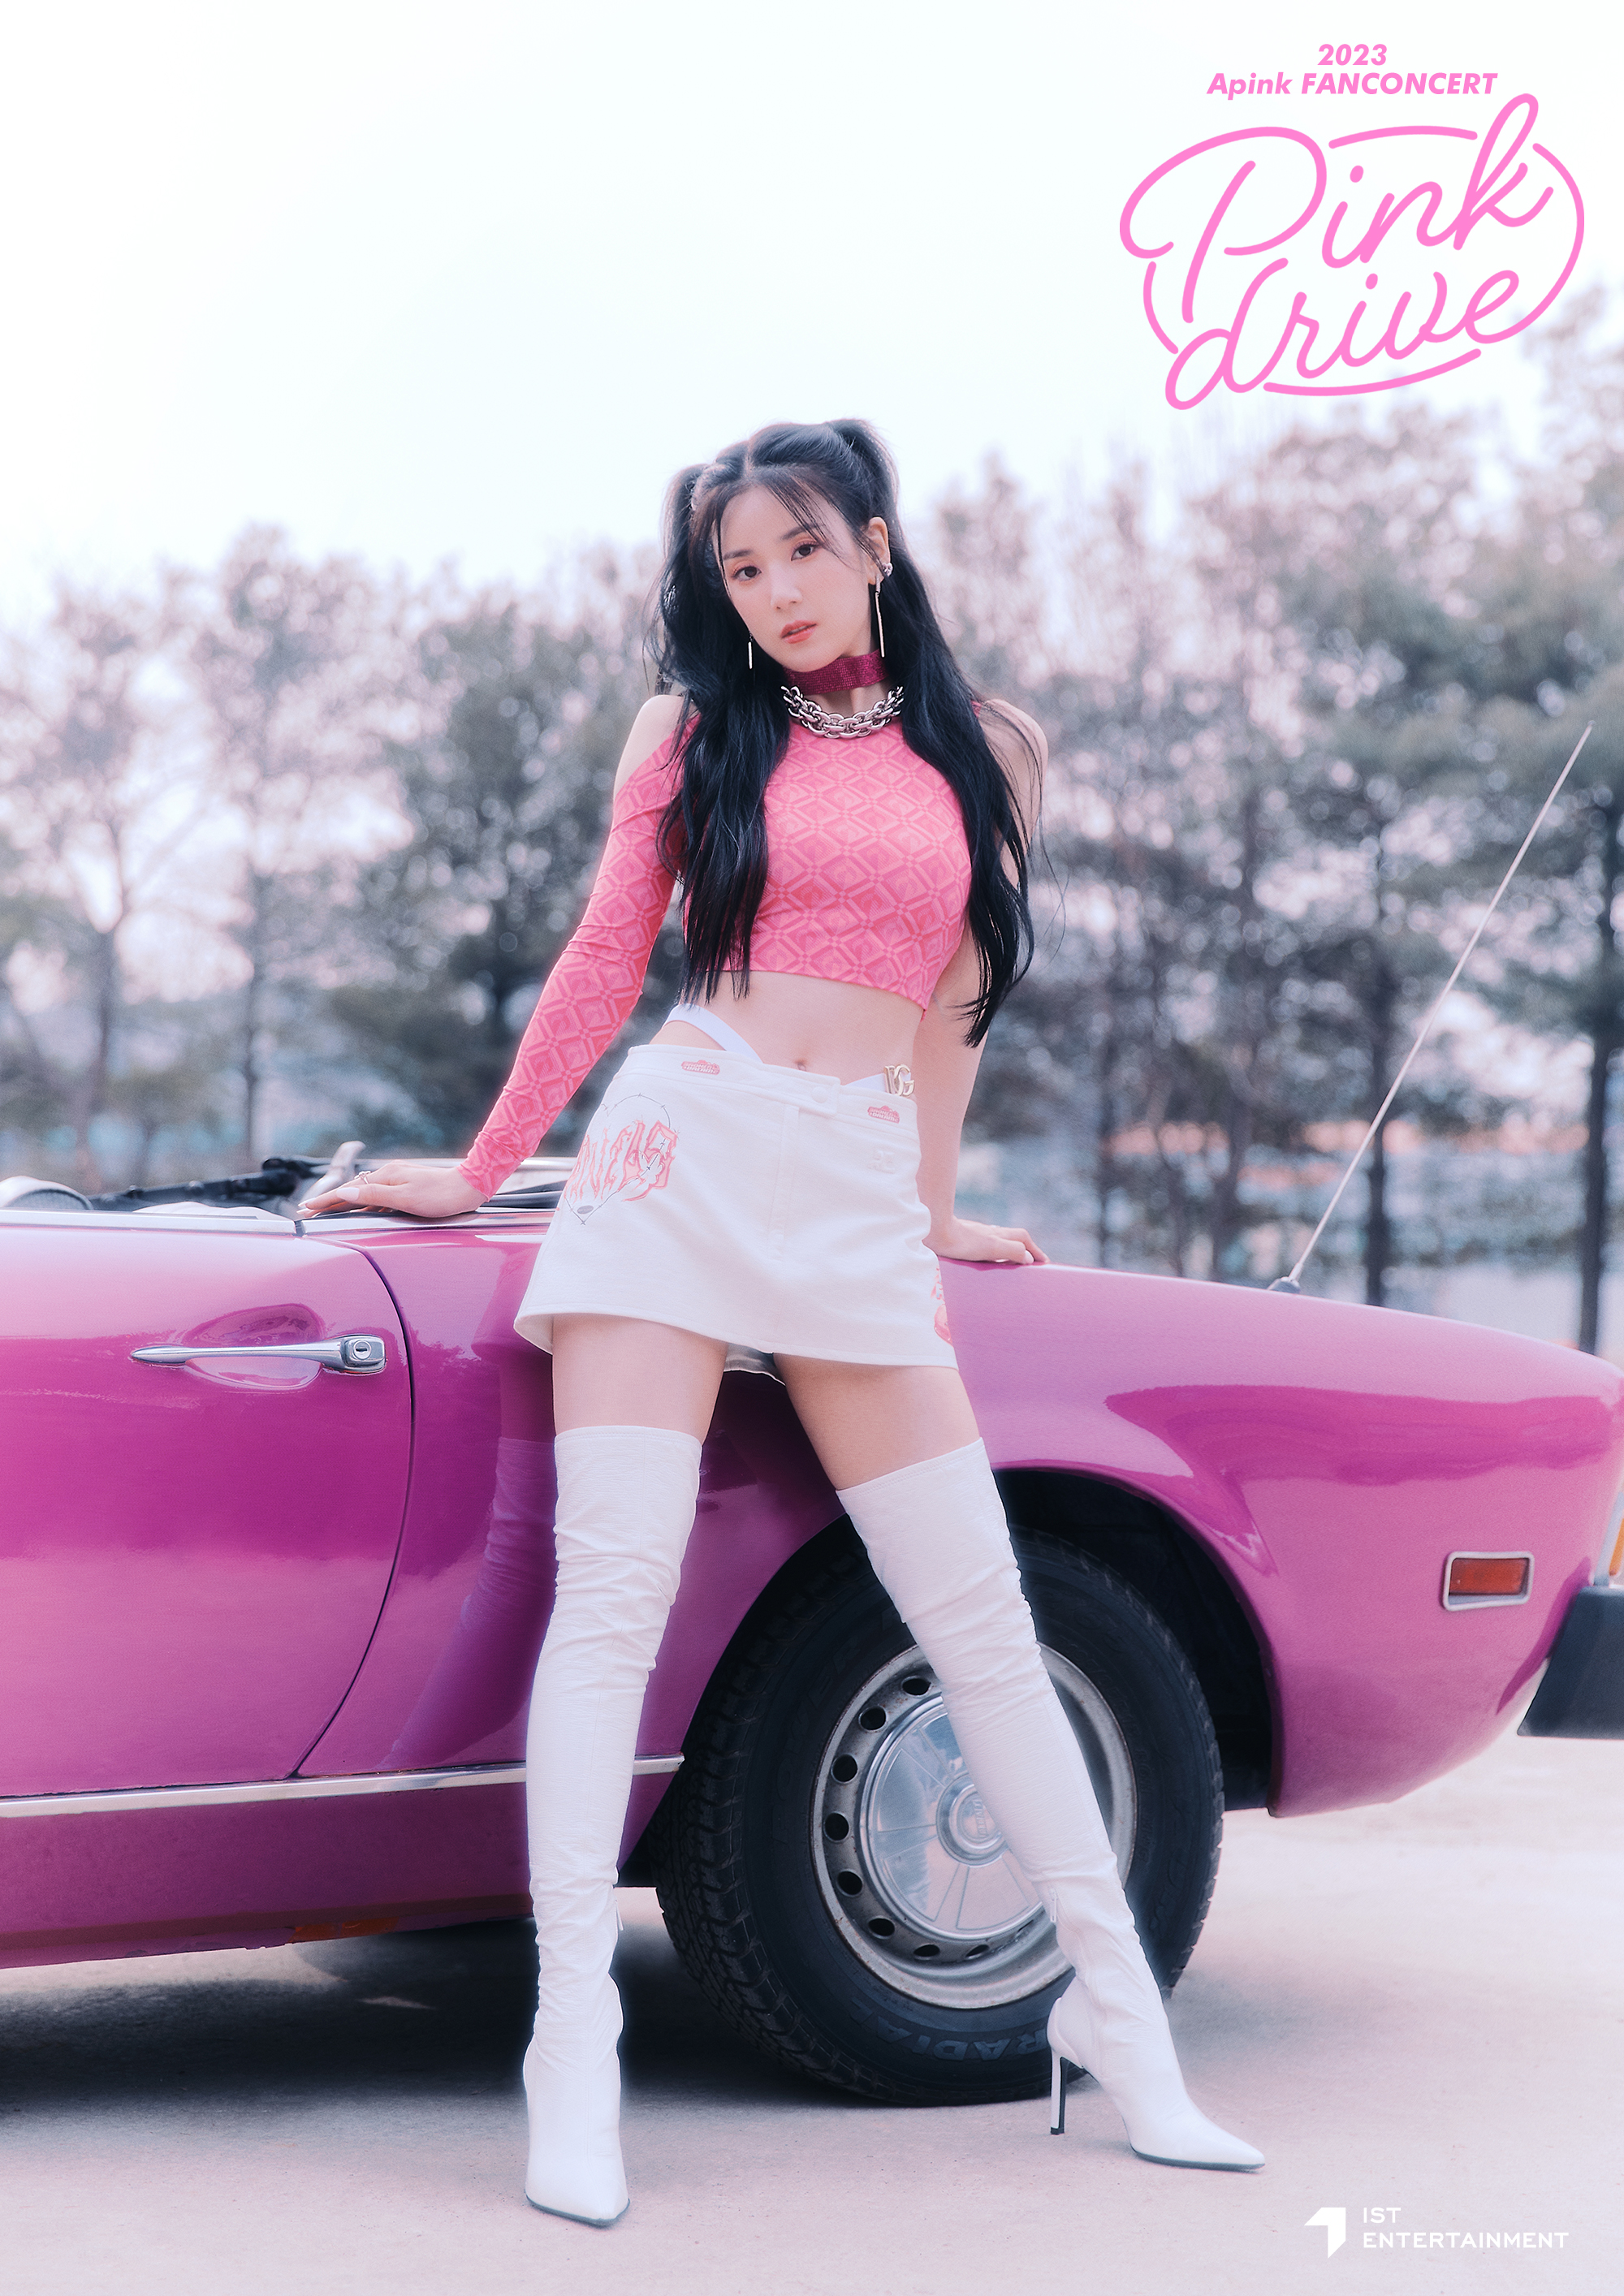 2023 에이핑크 Apink FANCONCERT [Pink drive] Poster 초롱 보미